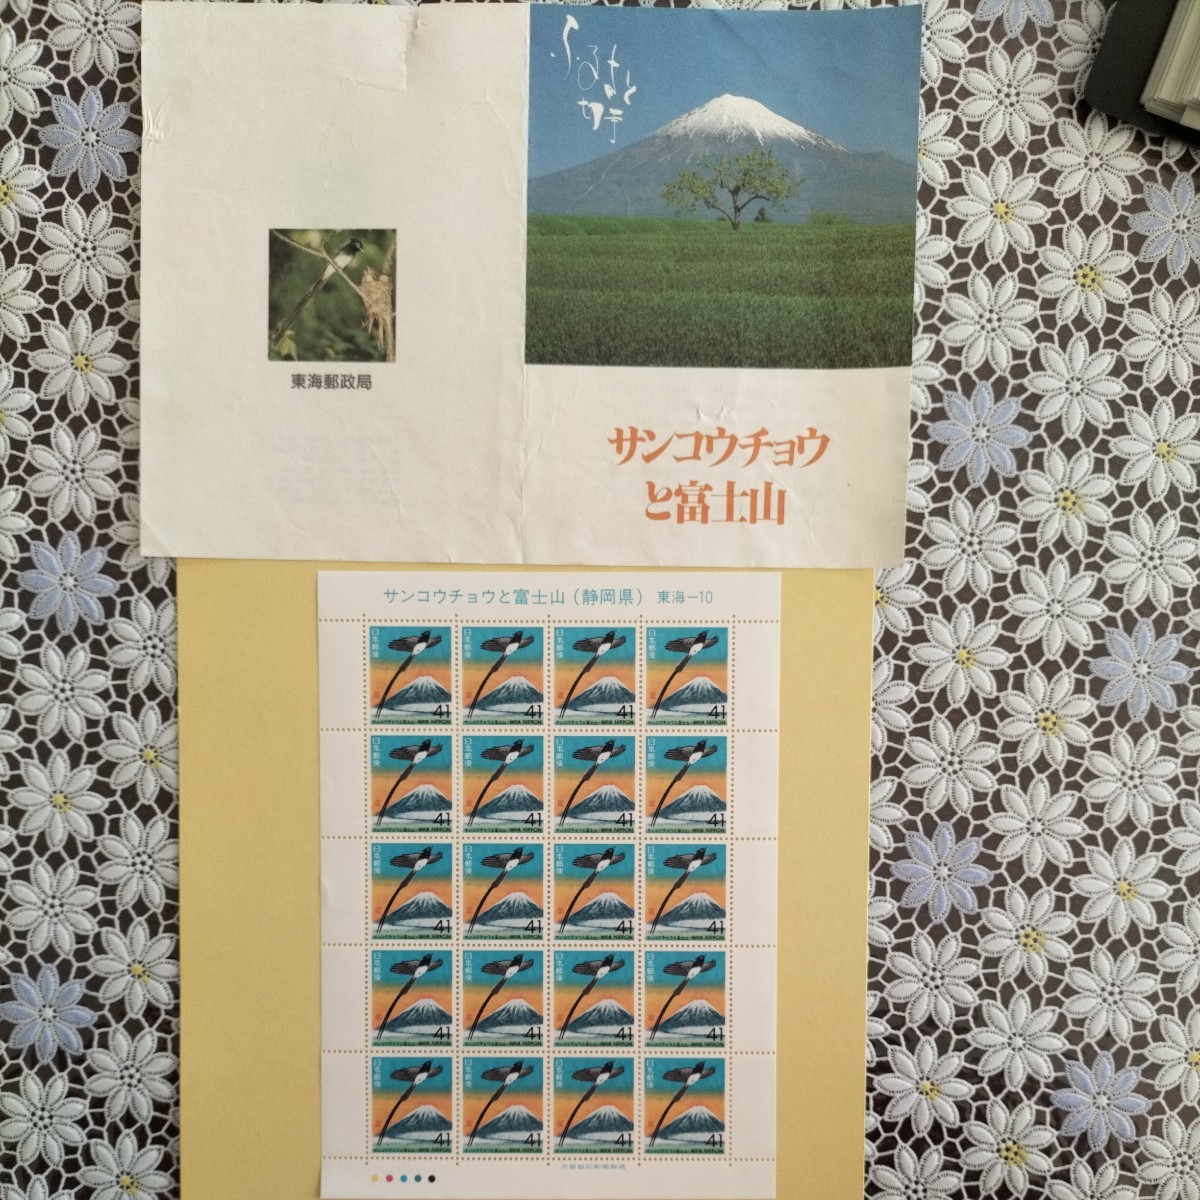 【ふるさと切手】静岡県　サンコウチョウと富士山、41円切手×20枚×1シート、発行記念パンフ付きです_画像1